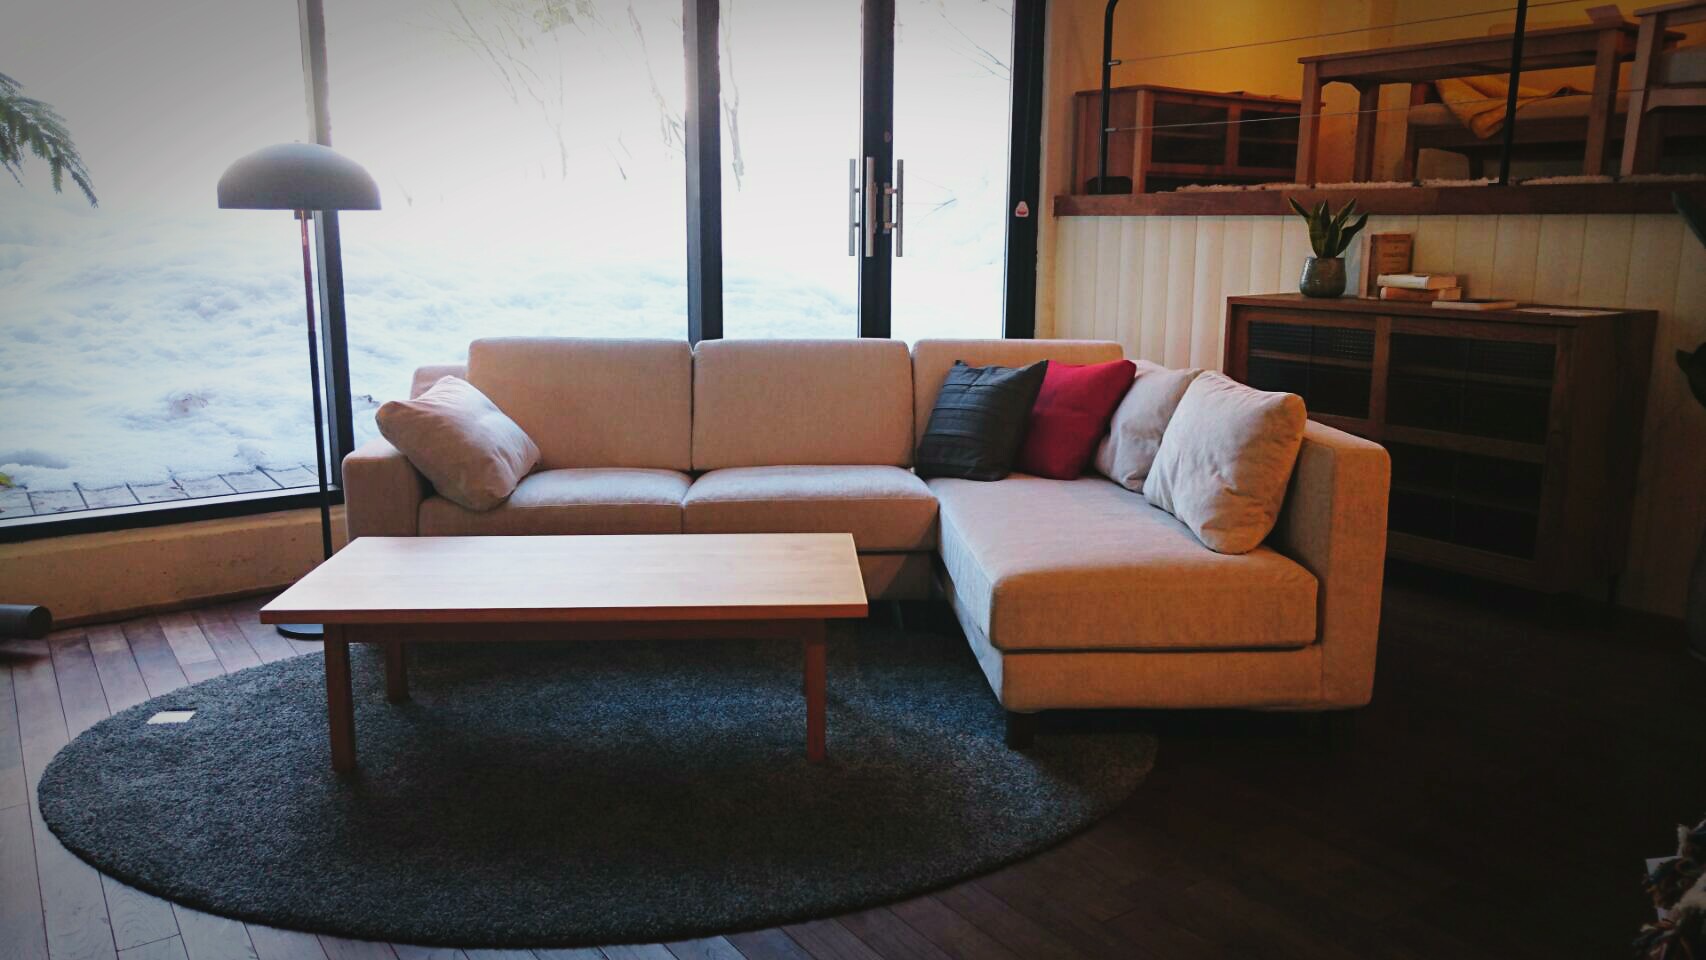 Fred sofaのご紹介 | S.H.S | 新潟で家具や雑貨を扱うインテリア 